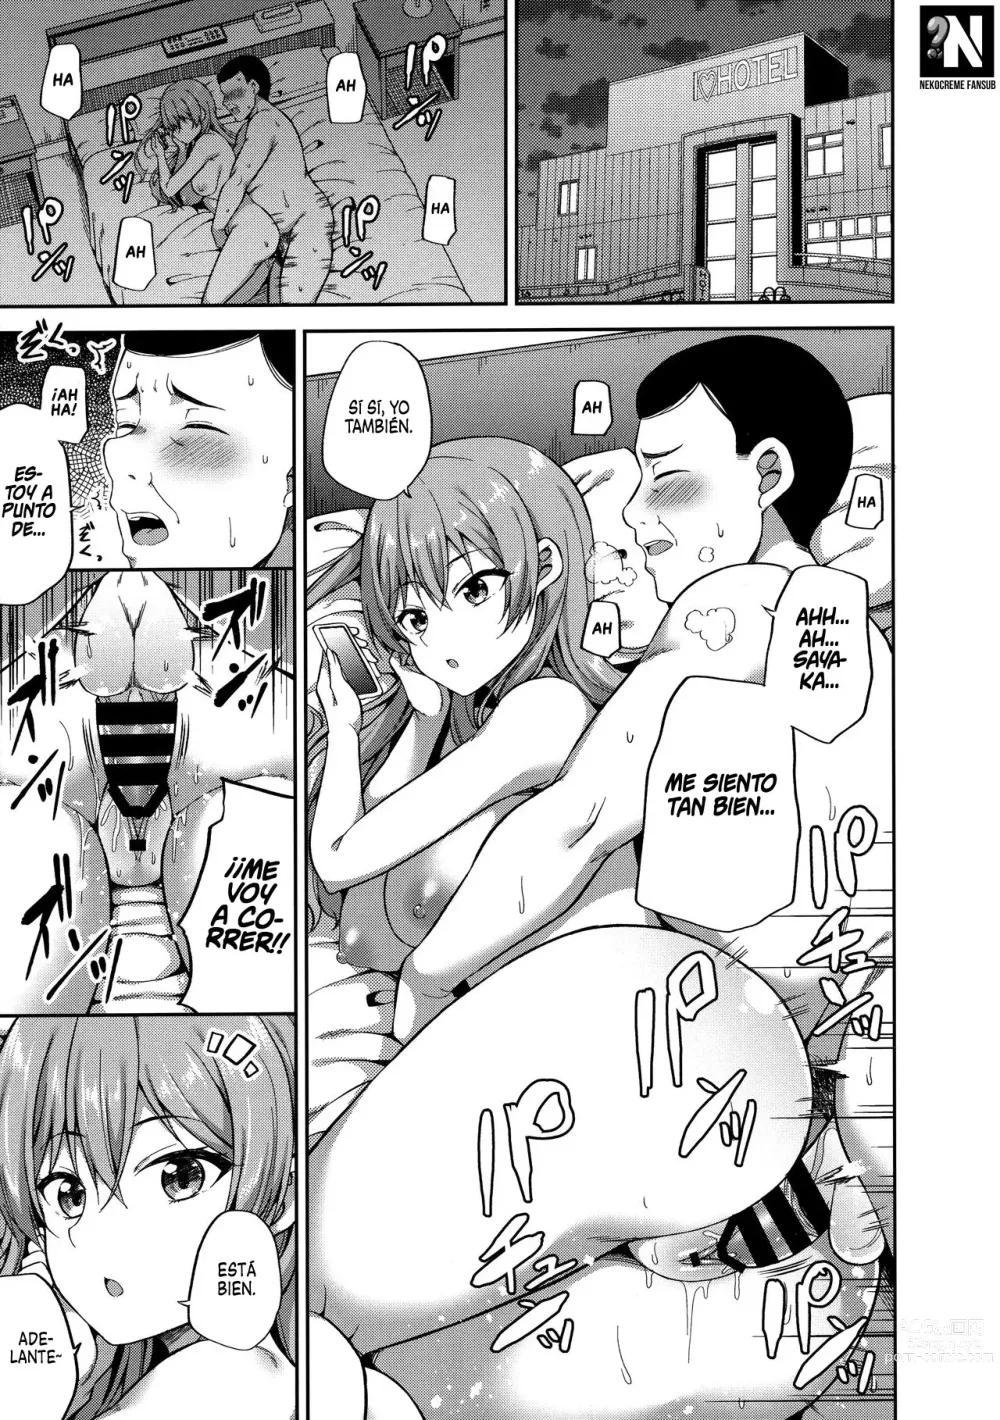 Page 3 of doujinshi ¿Te gustan las chicas que tienen citas compensadas?